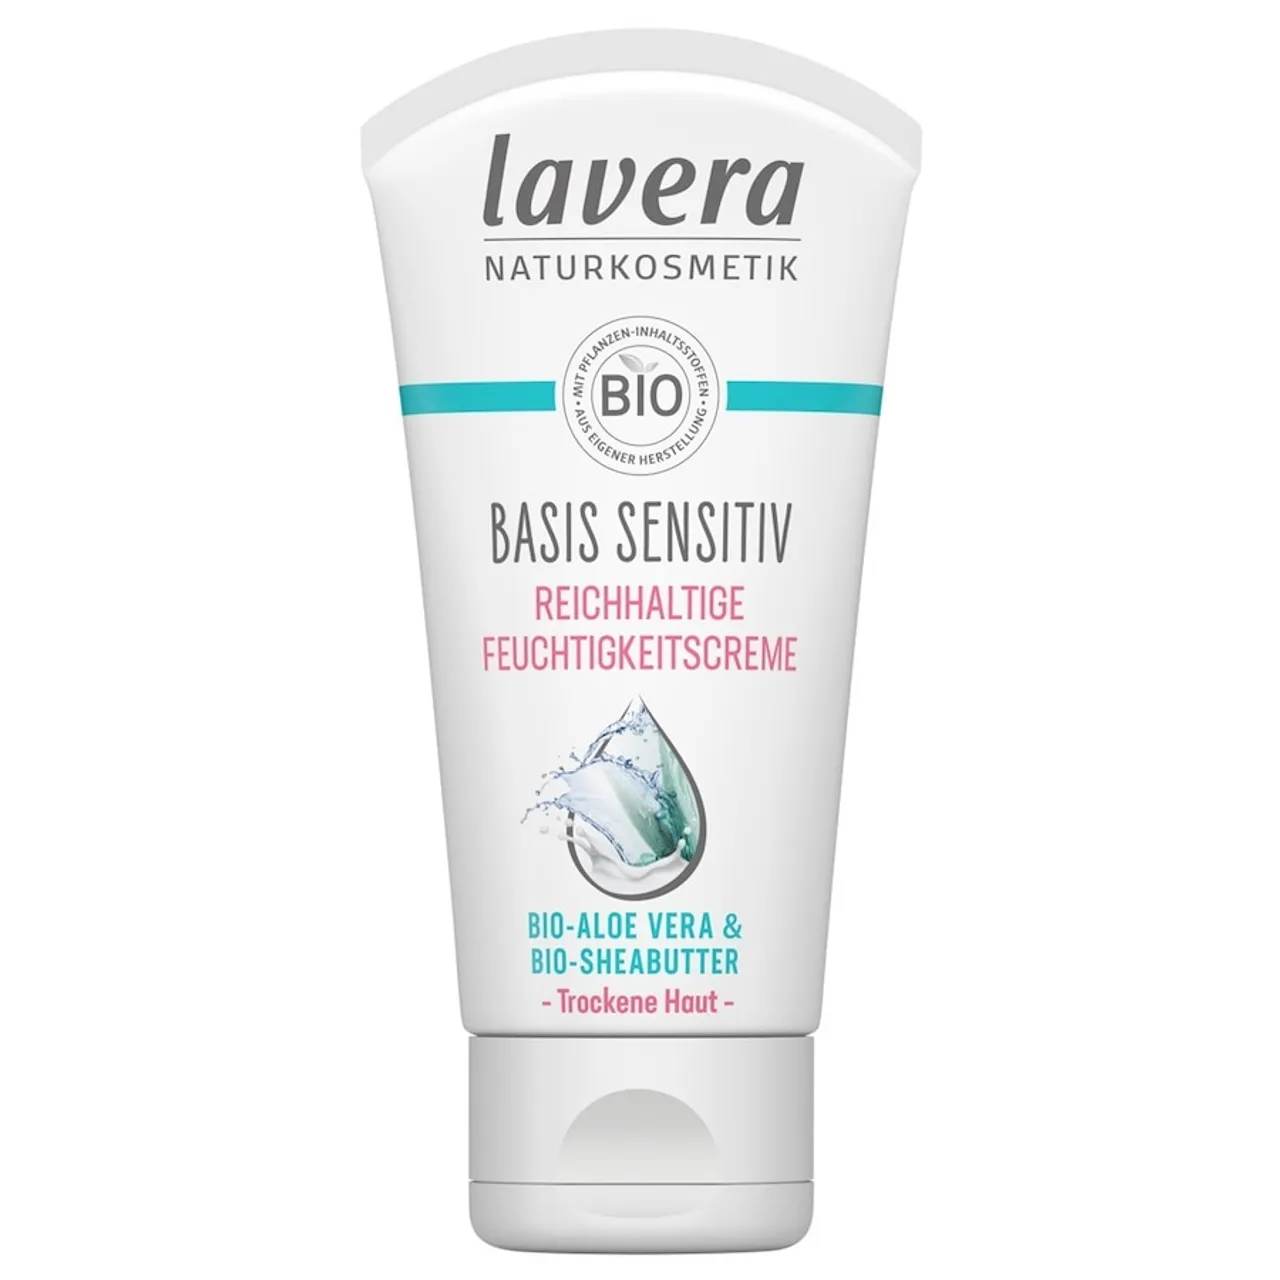 lavera - basis sensitiv Reichhaltige Feuchtigkeitscreme Gesichtscreme 50 ml